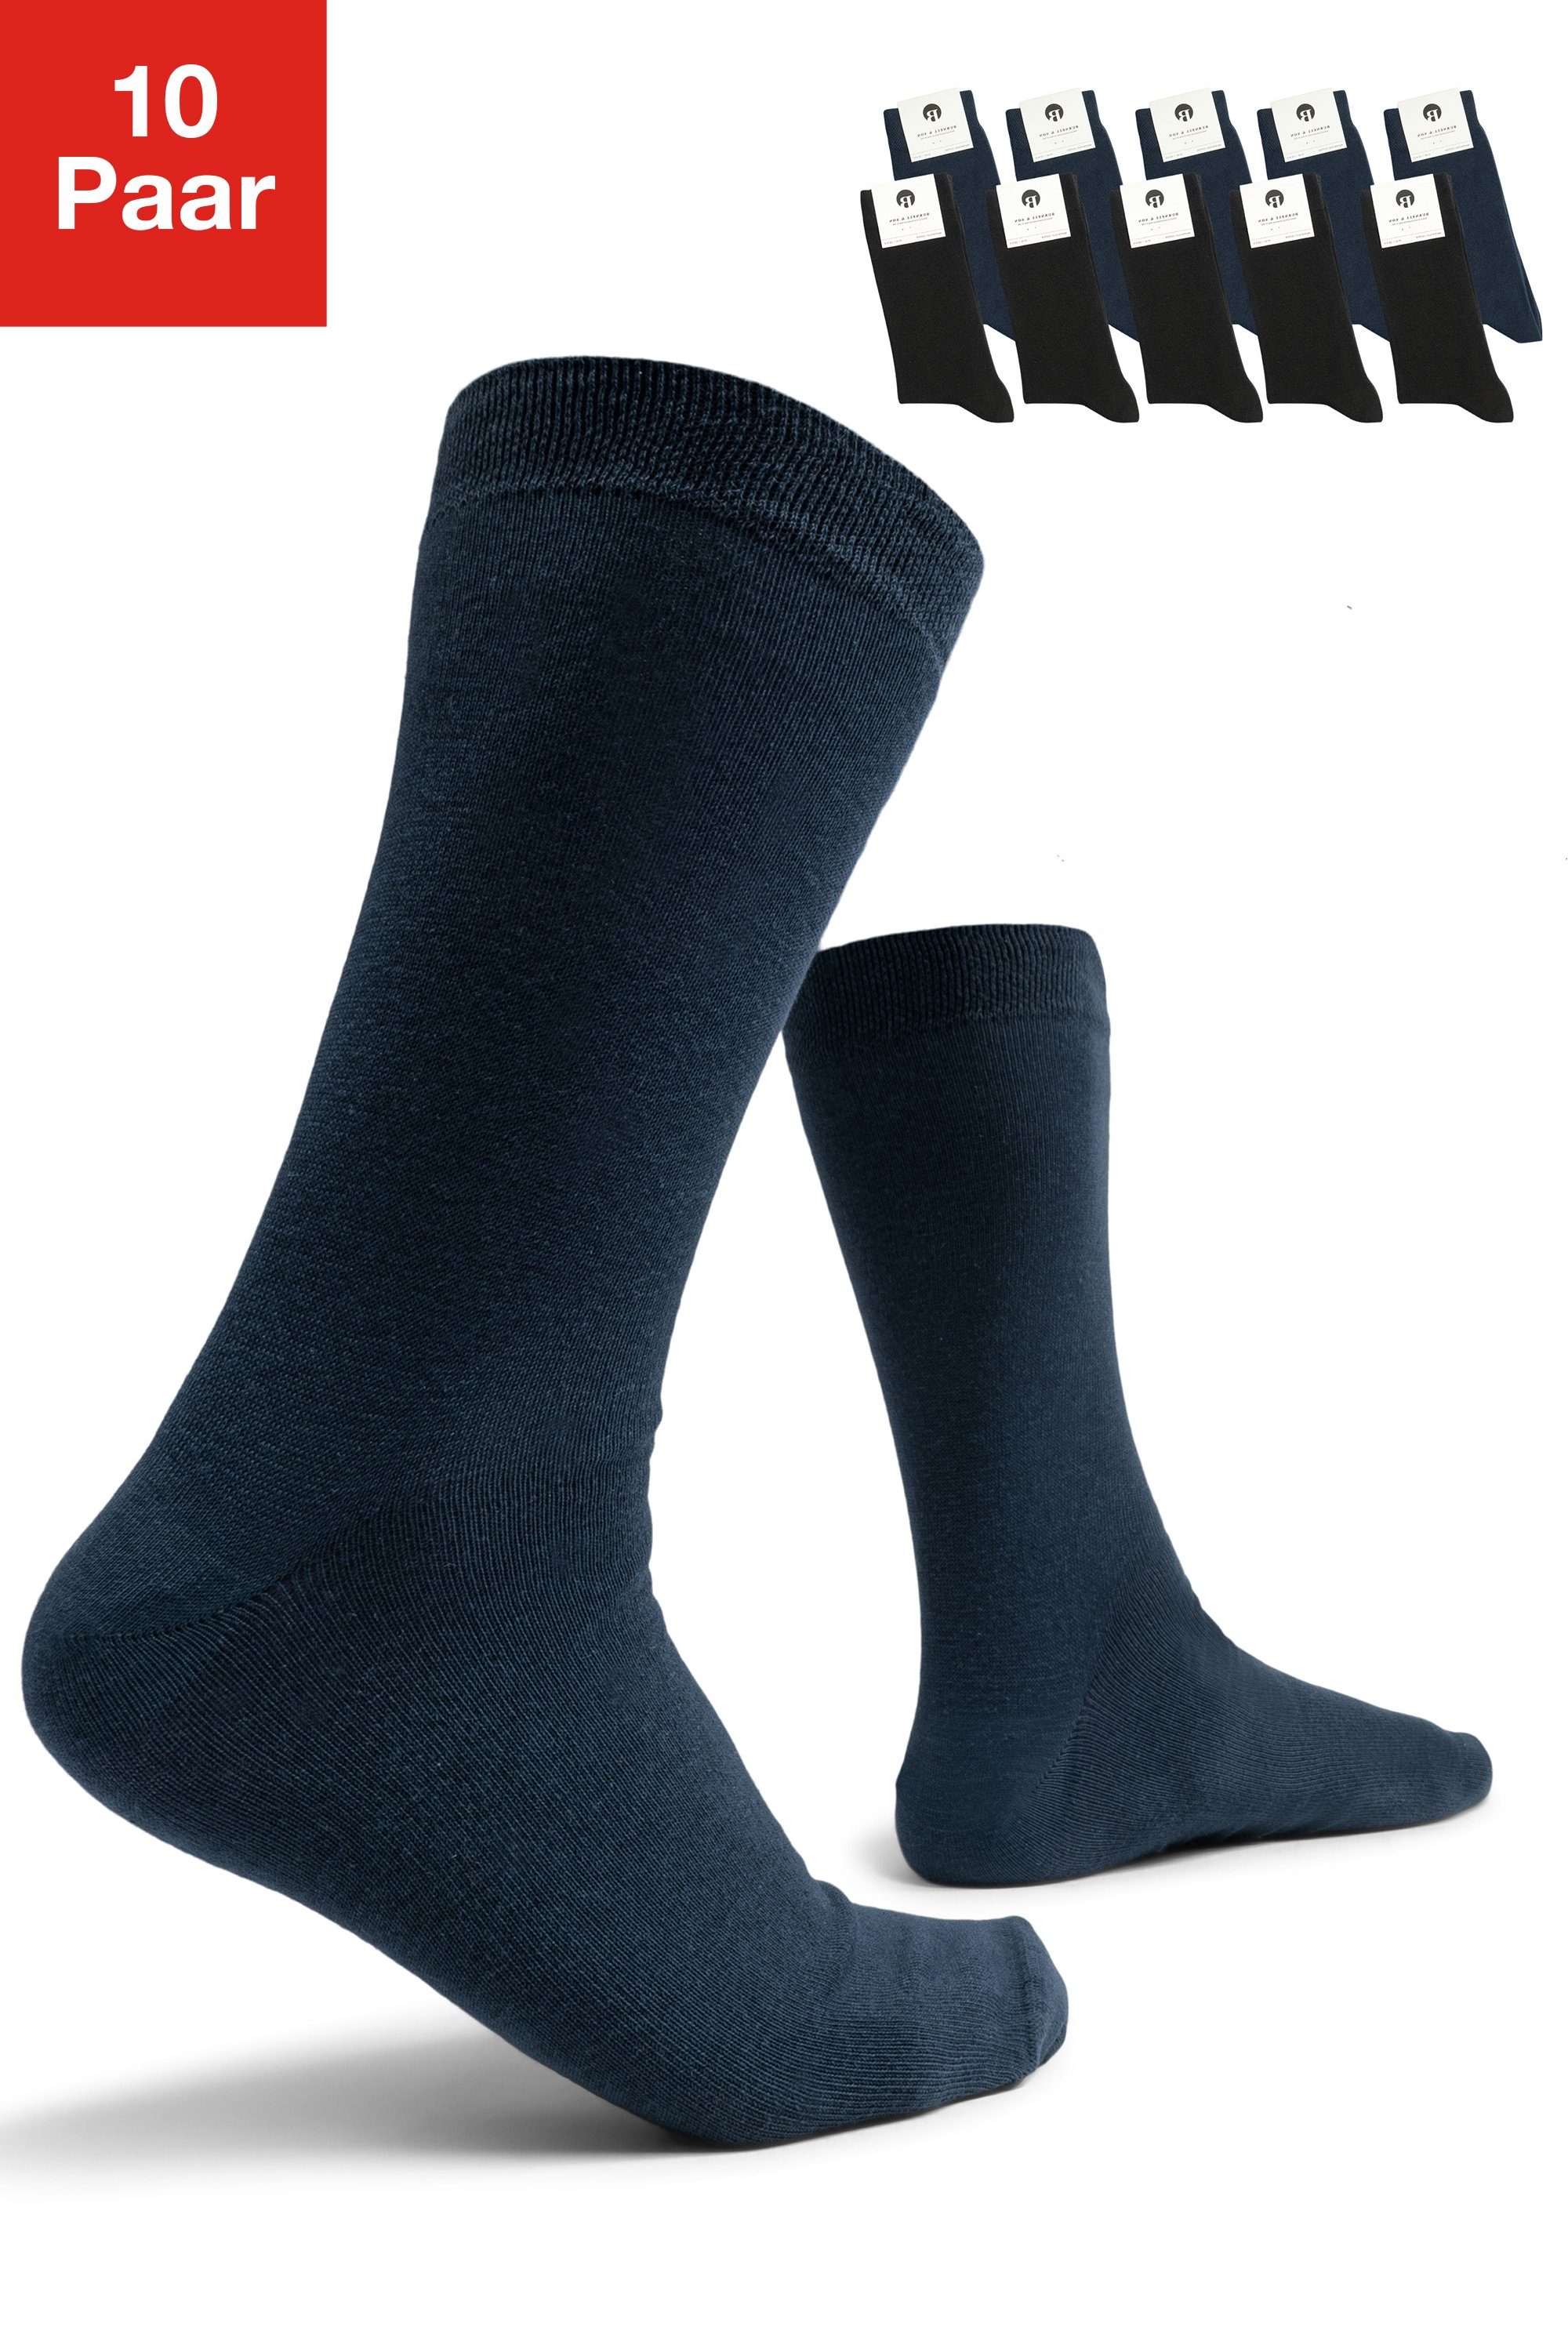 Damen Blau 5x Burnell 10-Paar) Komfortbund & Businesssocken aus & Son 5x mit Socken Baumwolle (Set, für Schwarz Herren